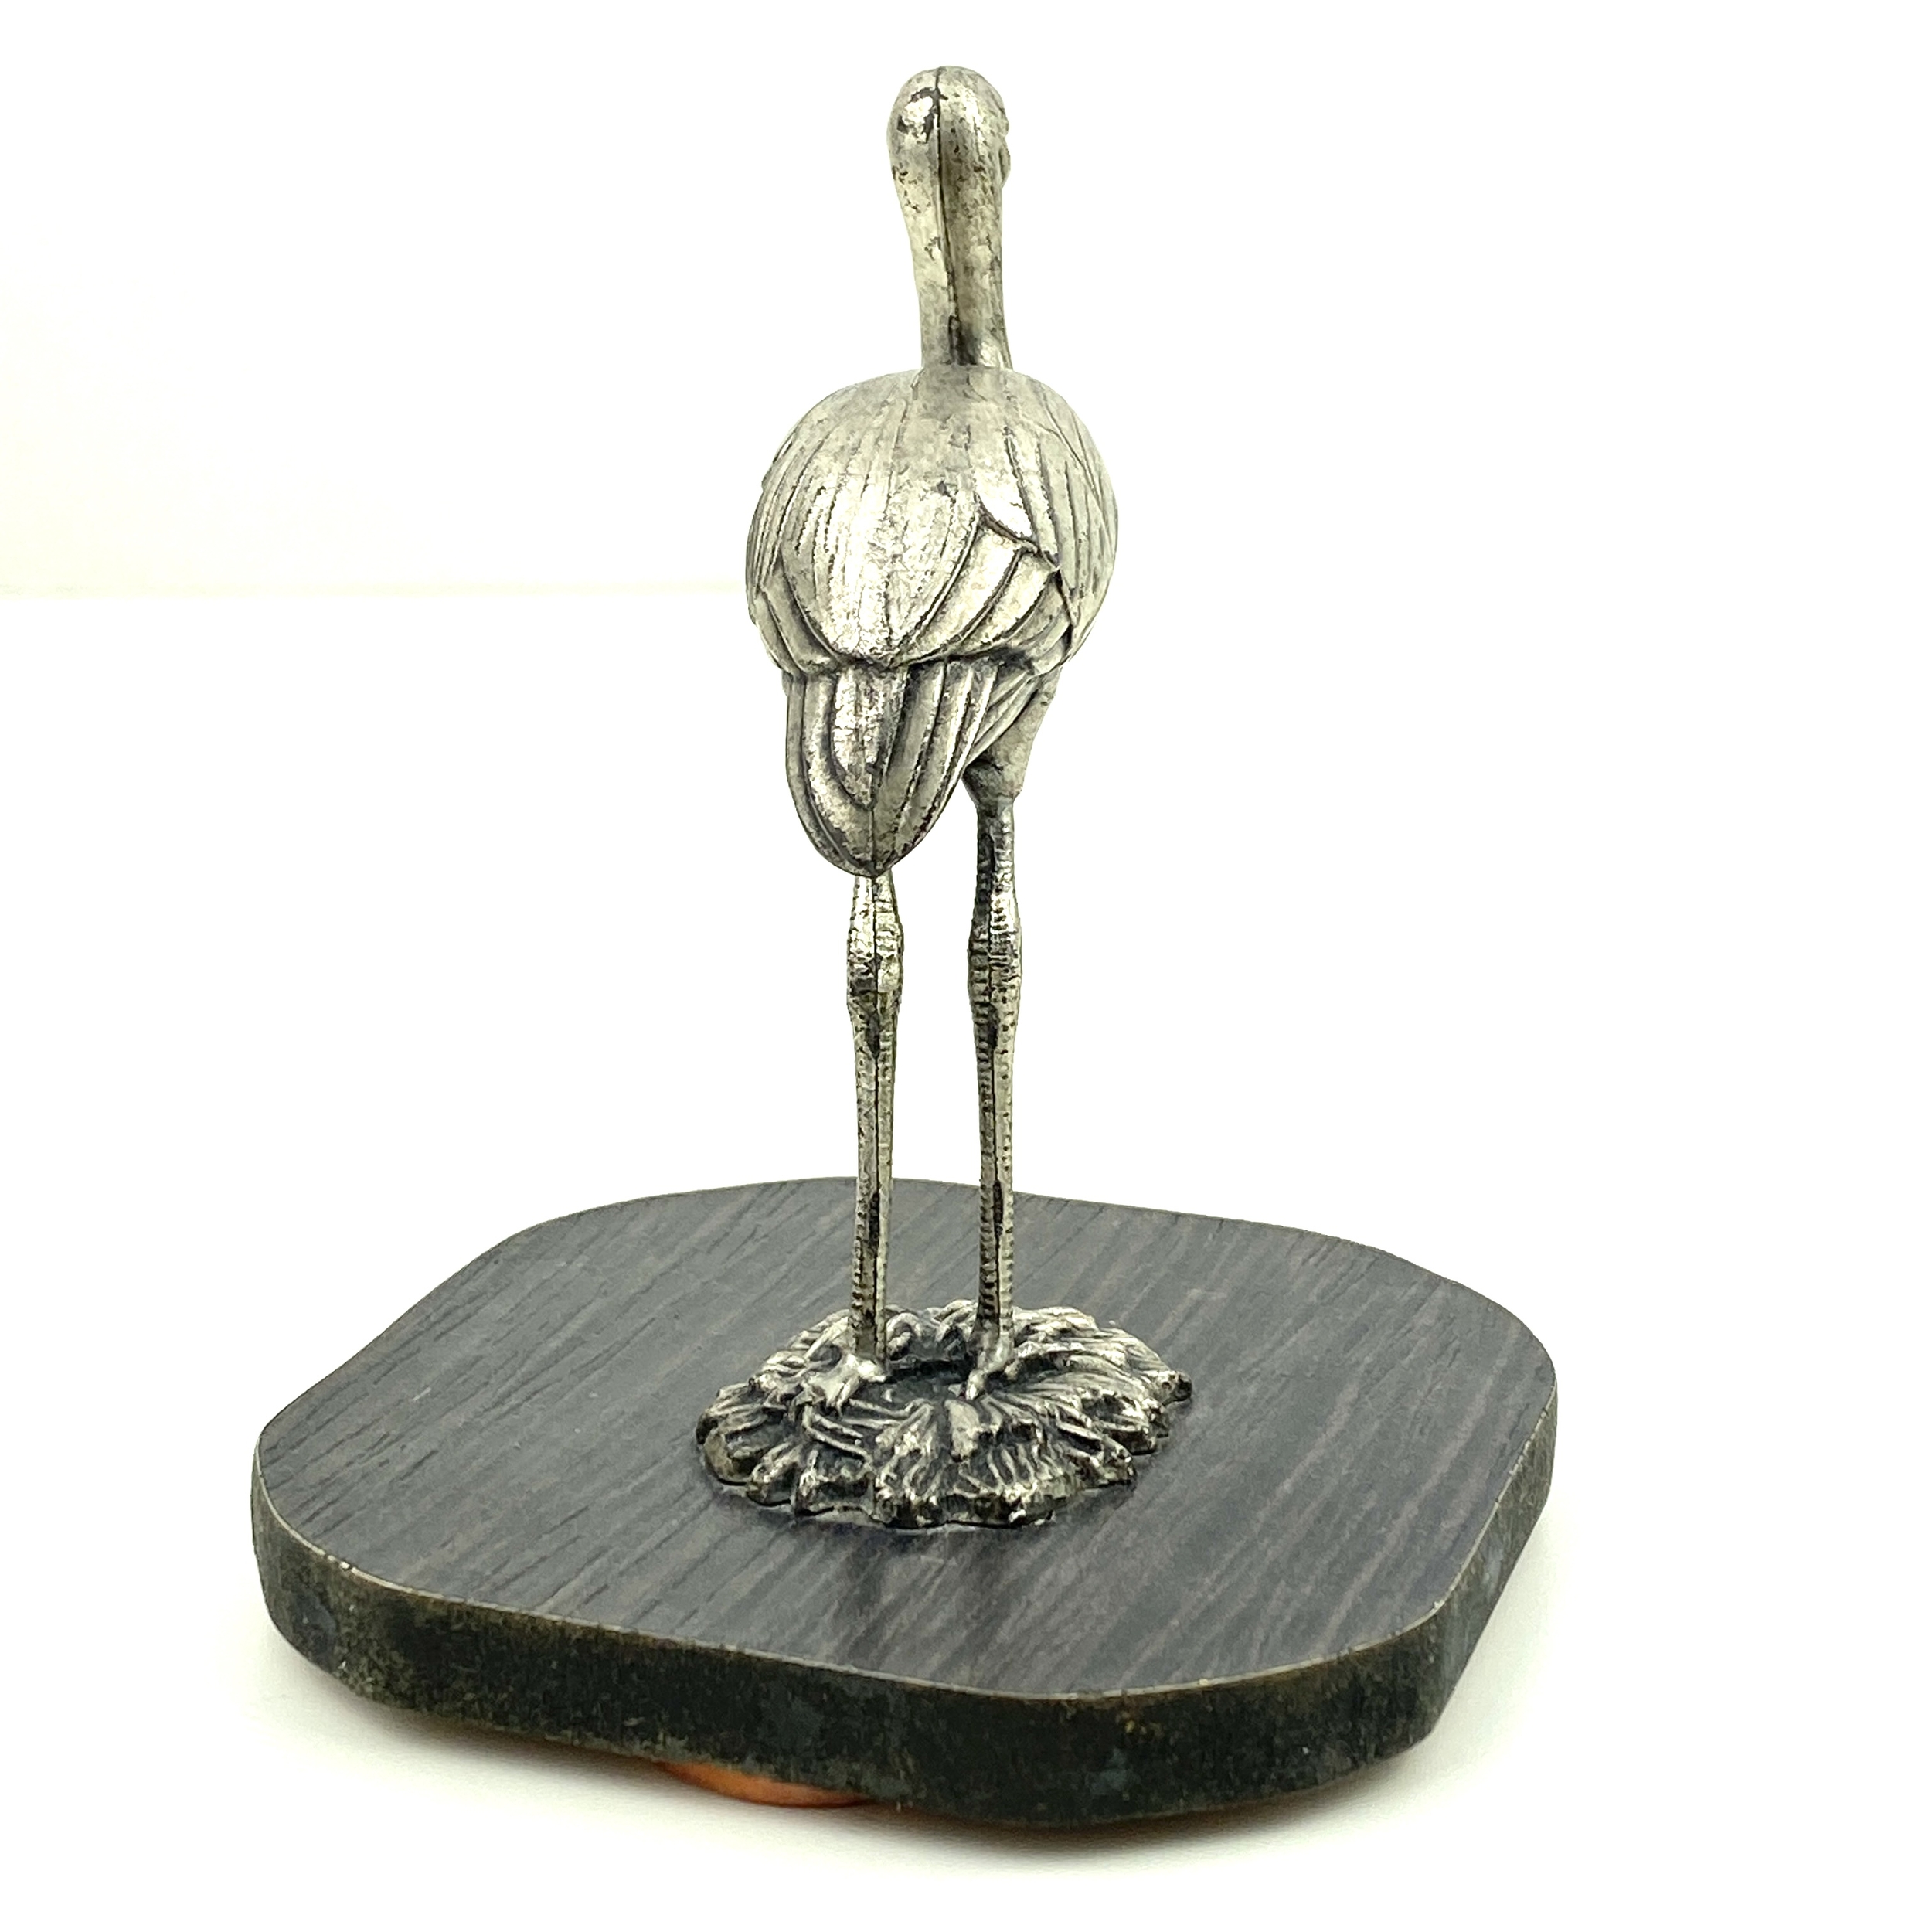 Oiseau ibis métal argenté vintage et durable boutique brocup